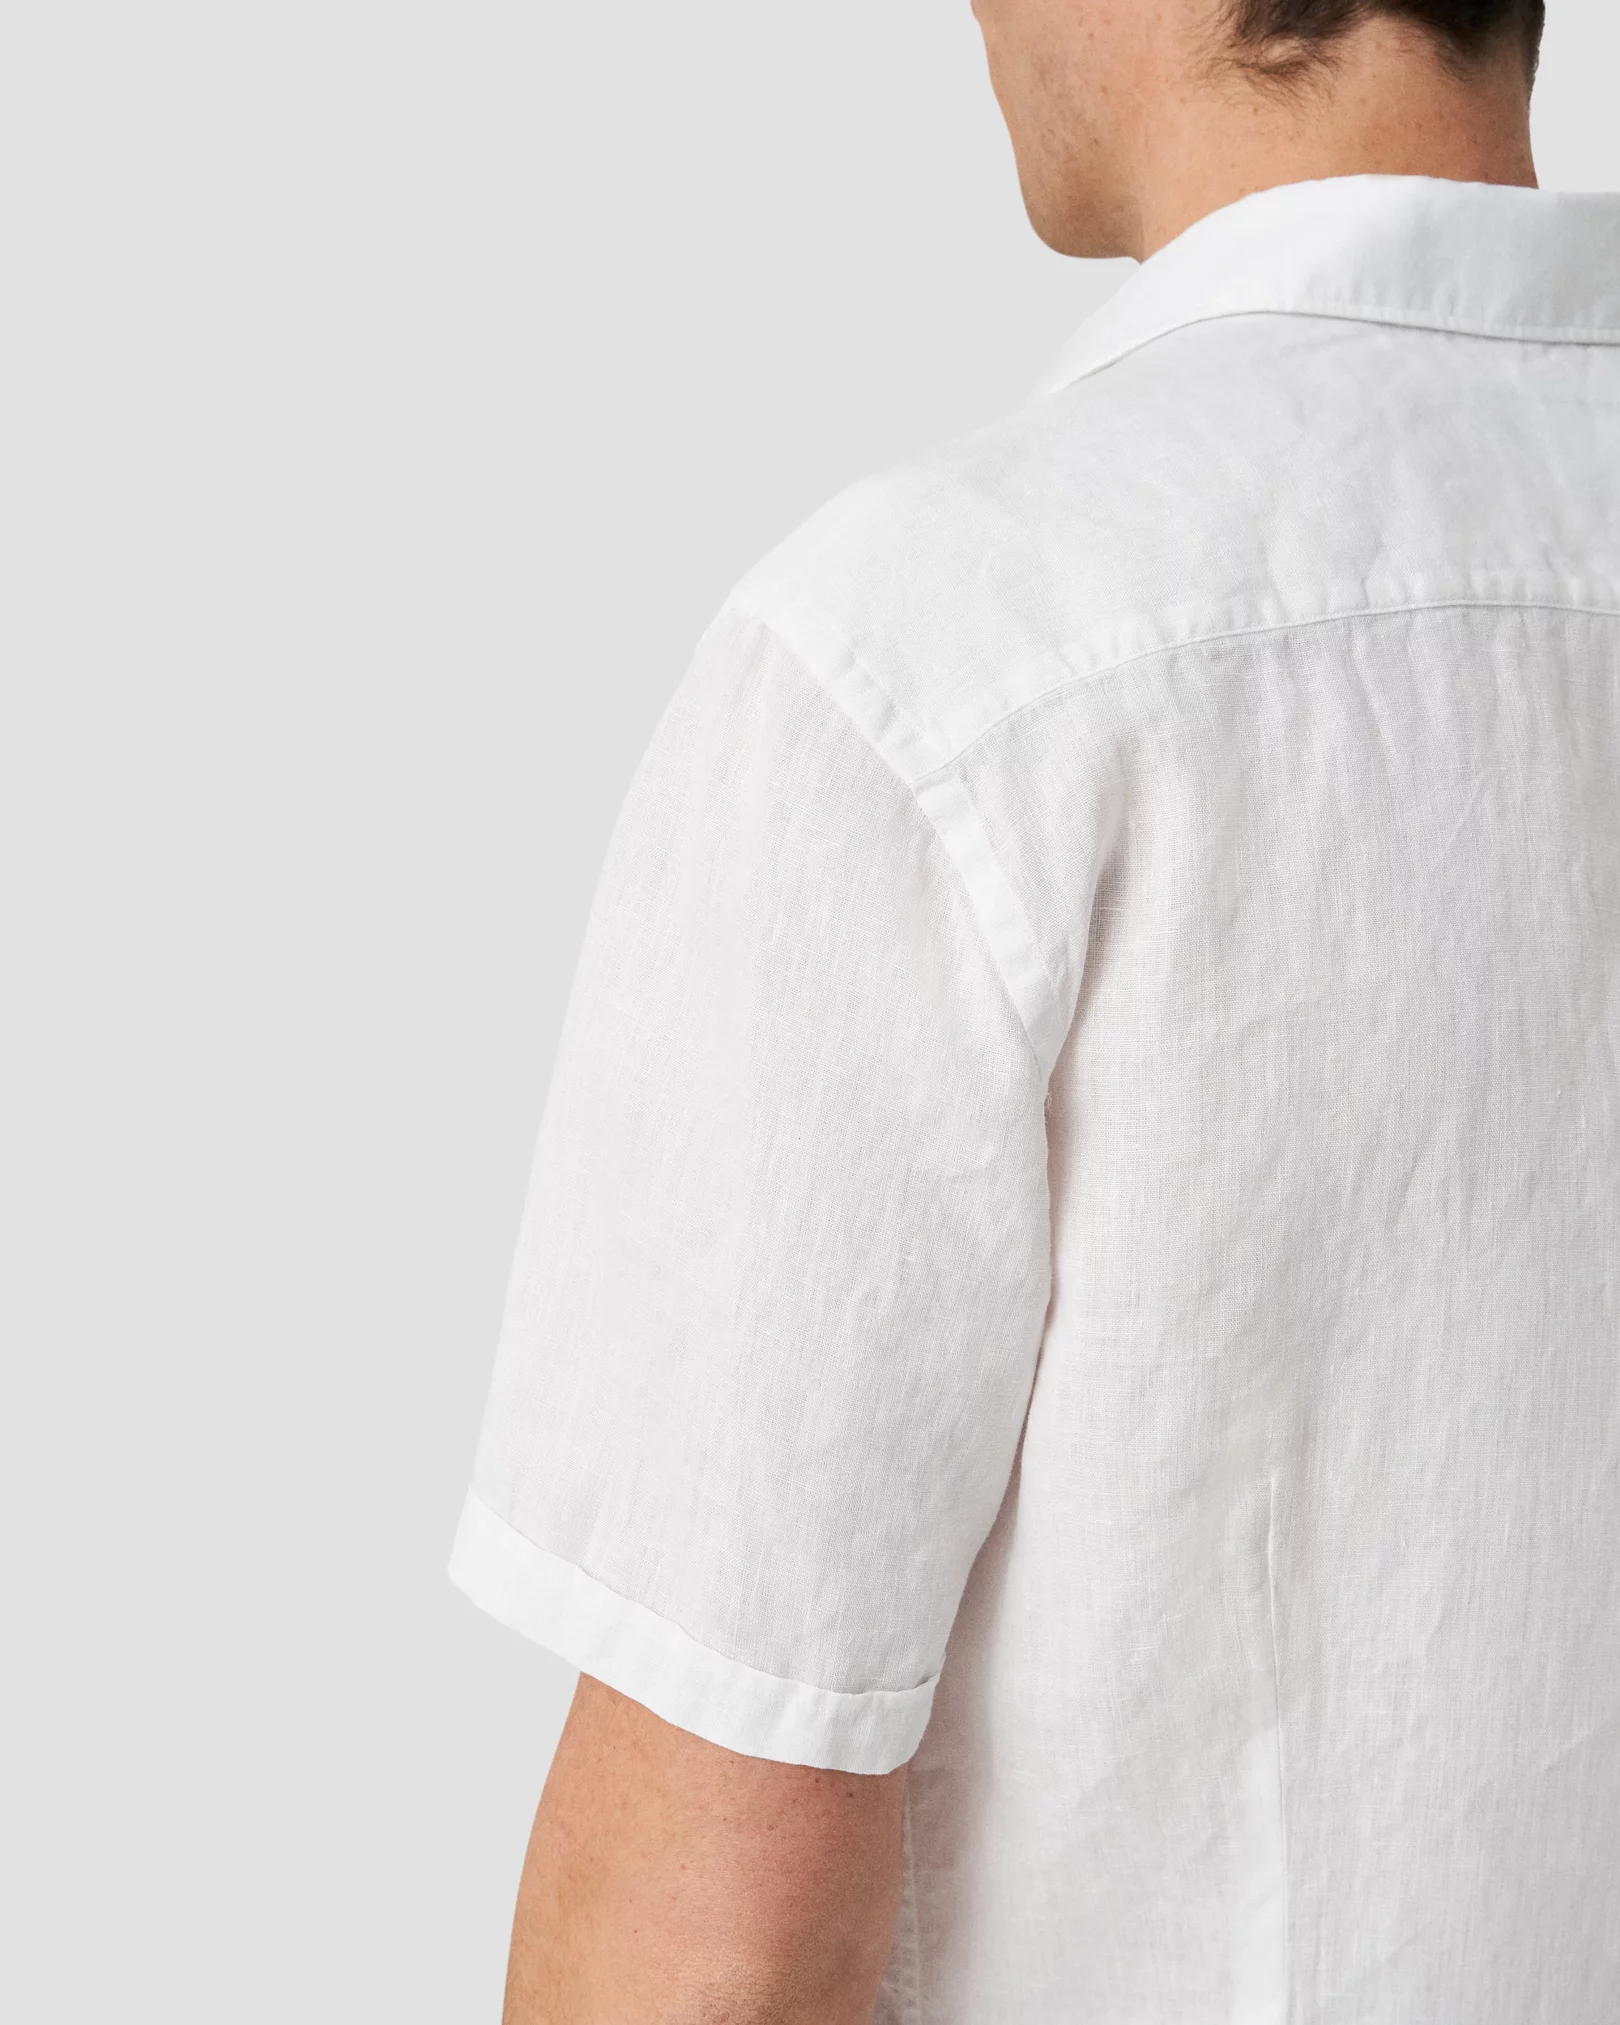 Eton - White Linen Shirt - Short Sleeve